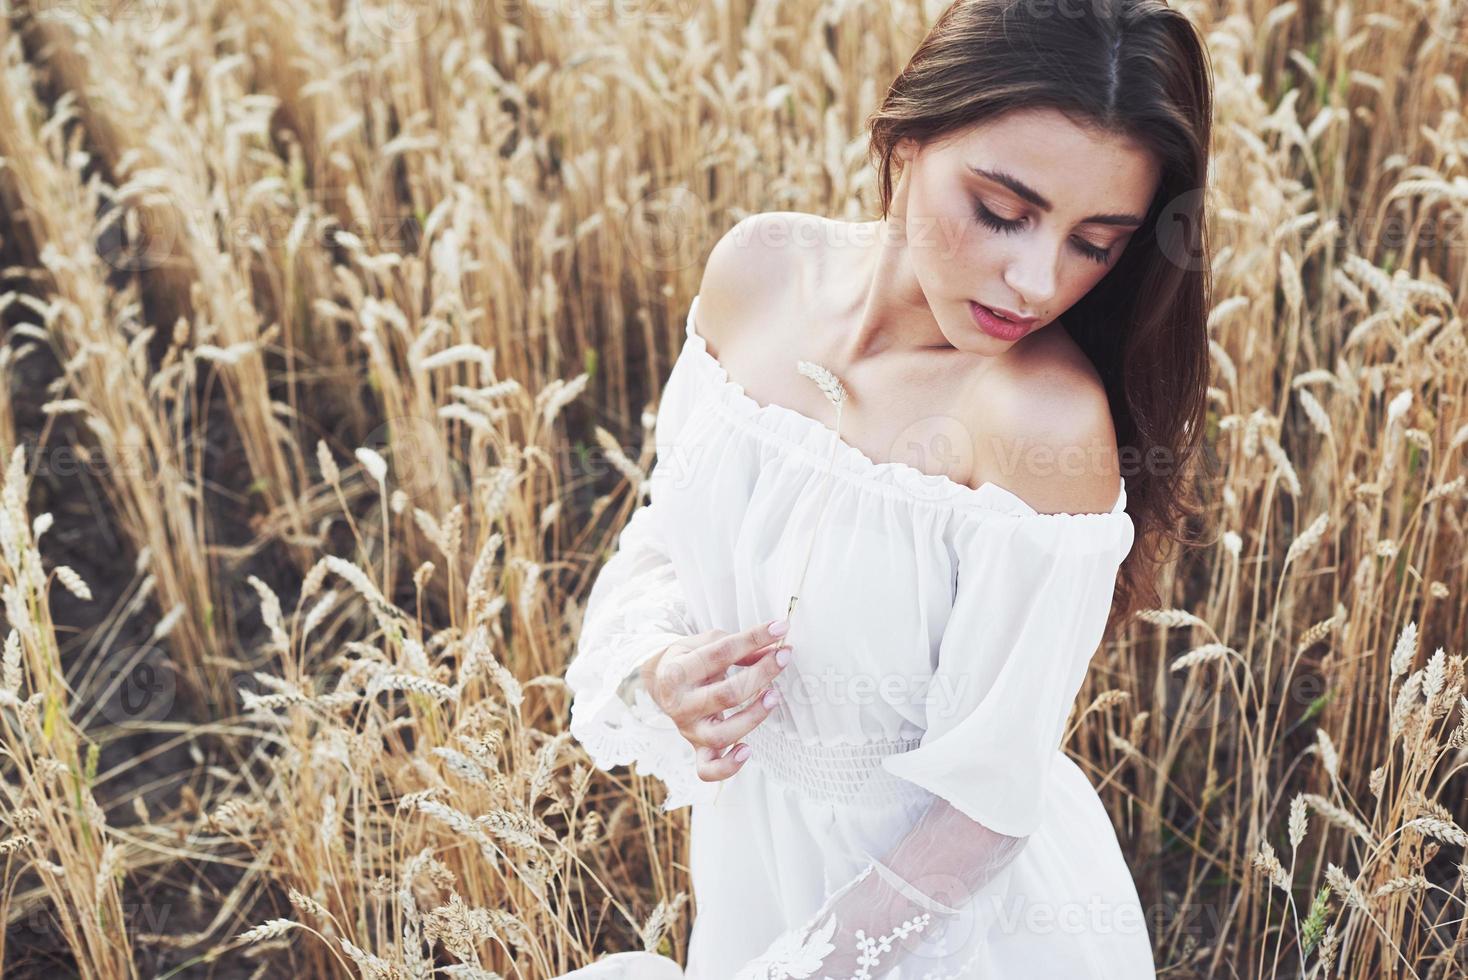 jong gevoelig meisje in witte jurk poseren in een veld van gouden tarwe foto